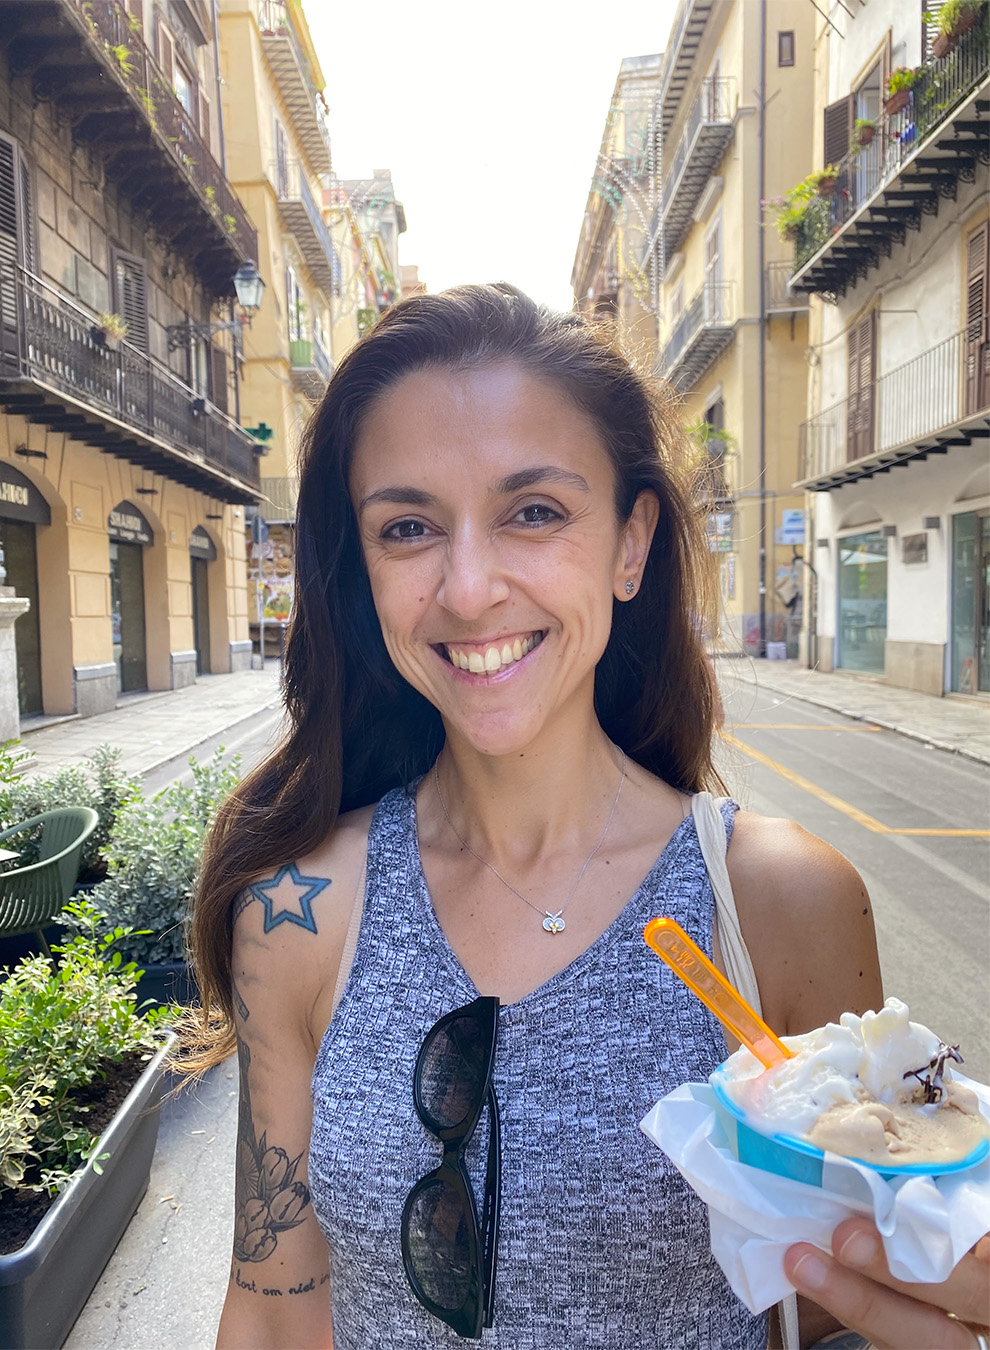 Malu Timoni Neves having a gelato in Italy